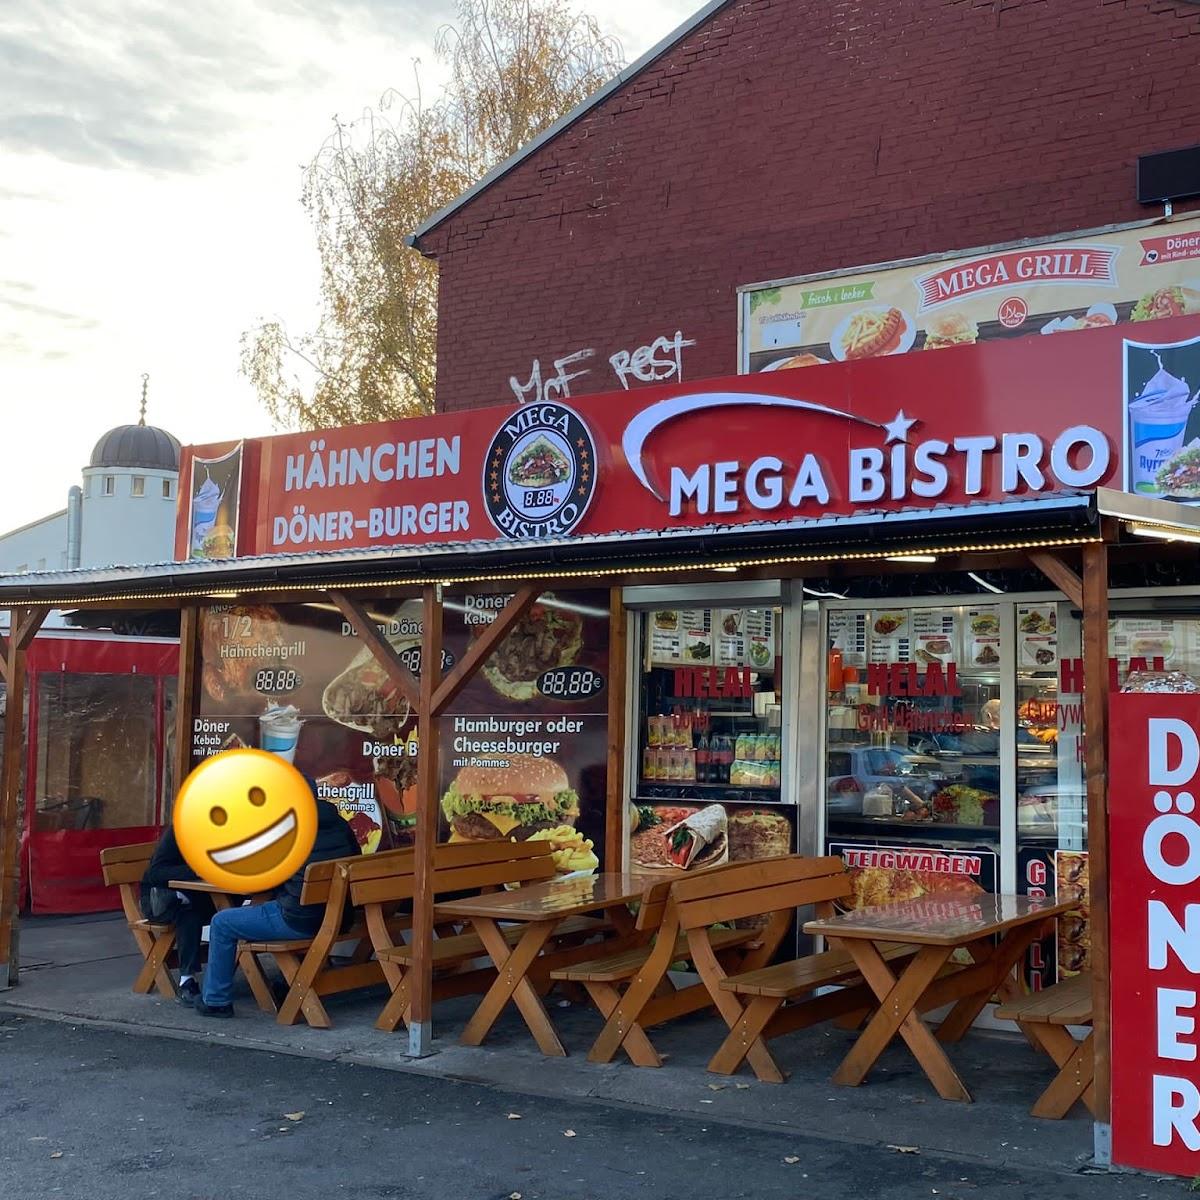 Restaurant "Mega Bistro" in Berlin